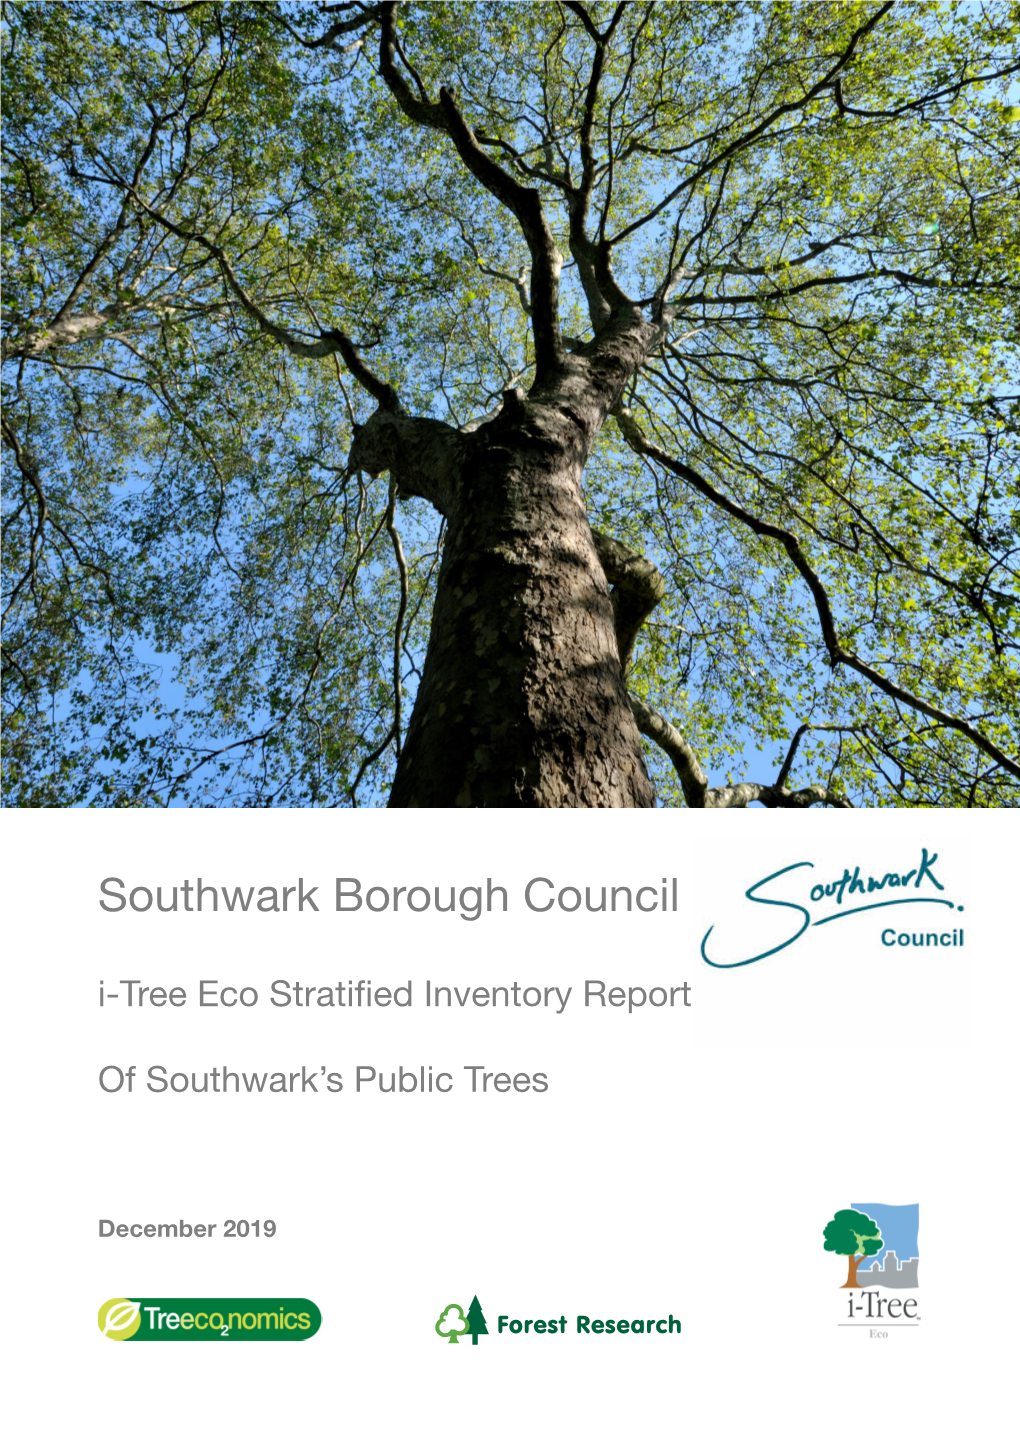 Southwark Borough Council – I-Tree Eco Inventory Report